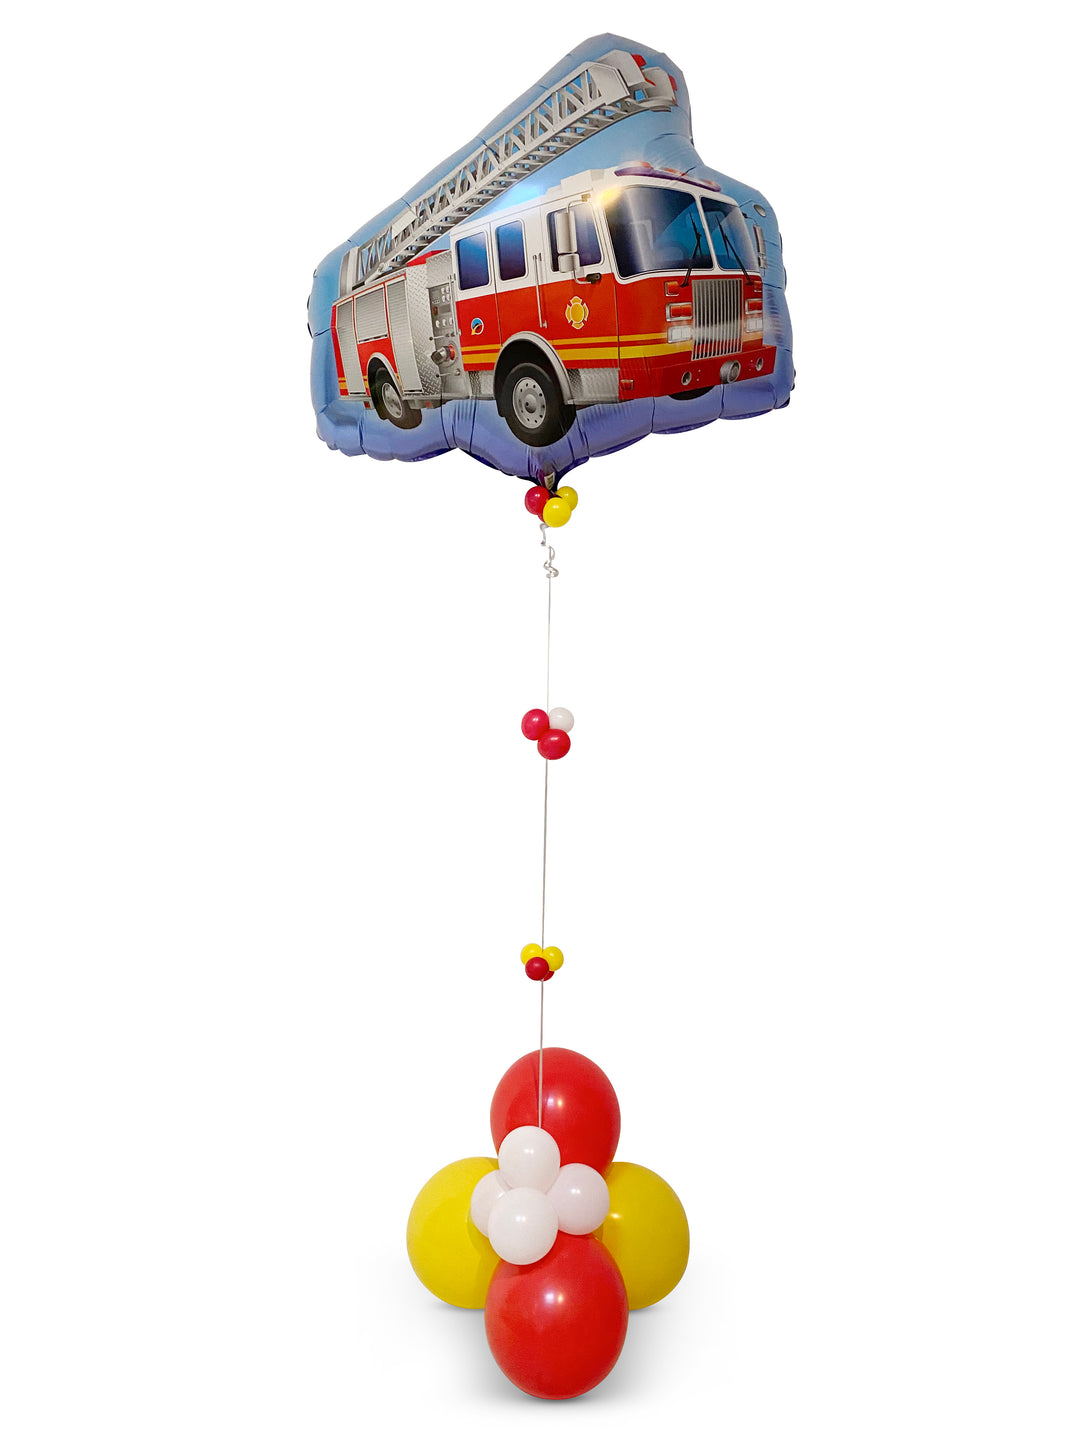 Fire truck balloons